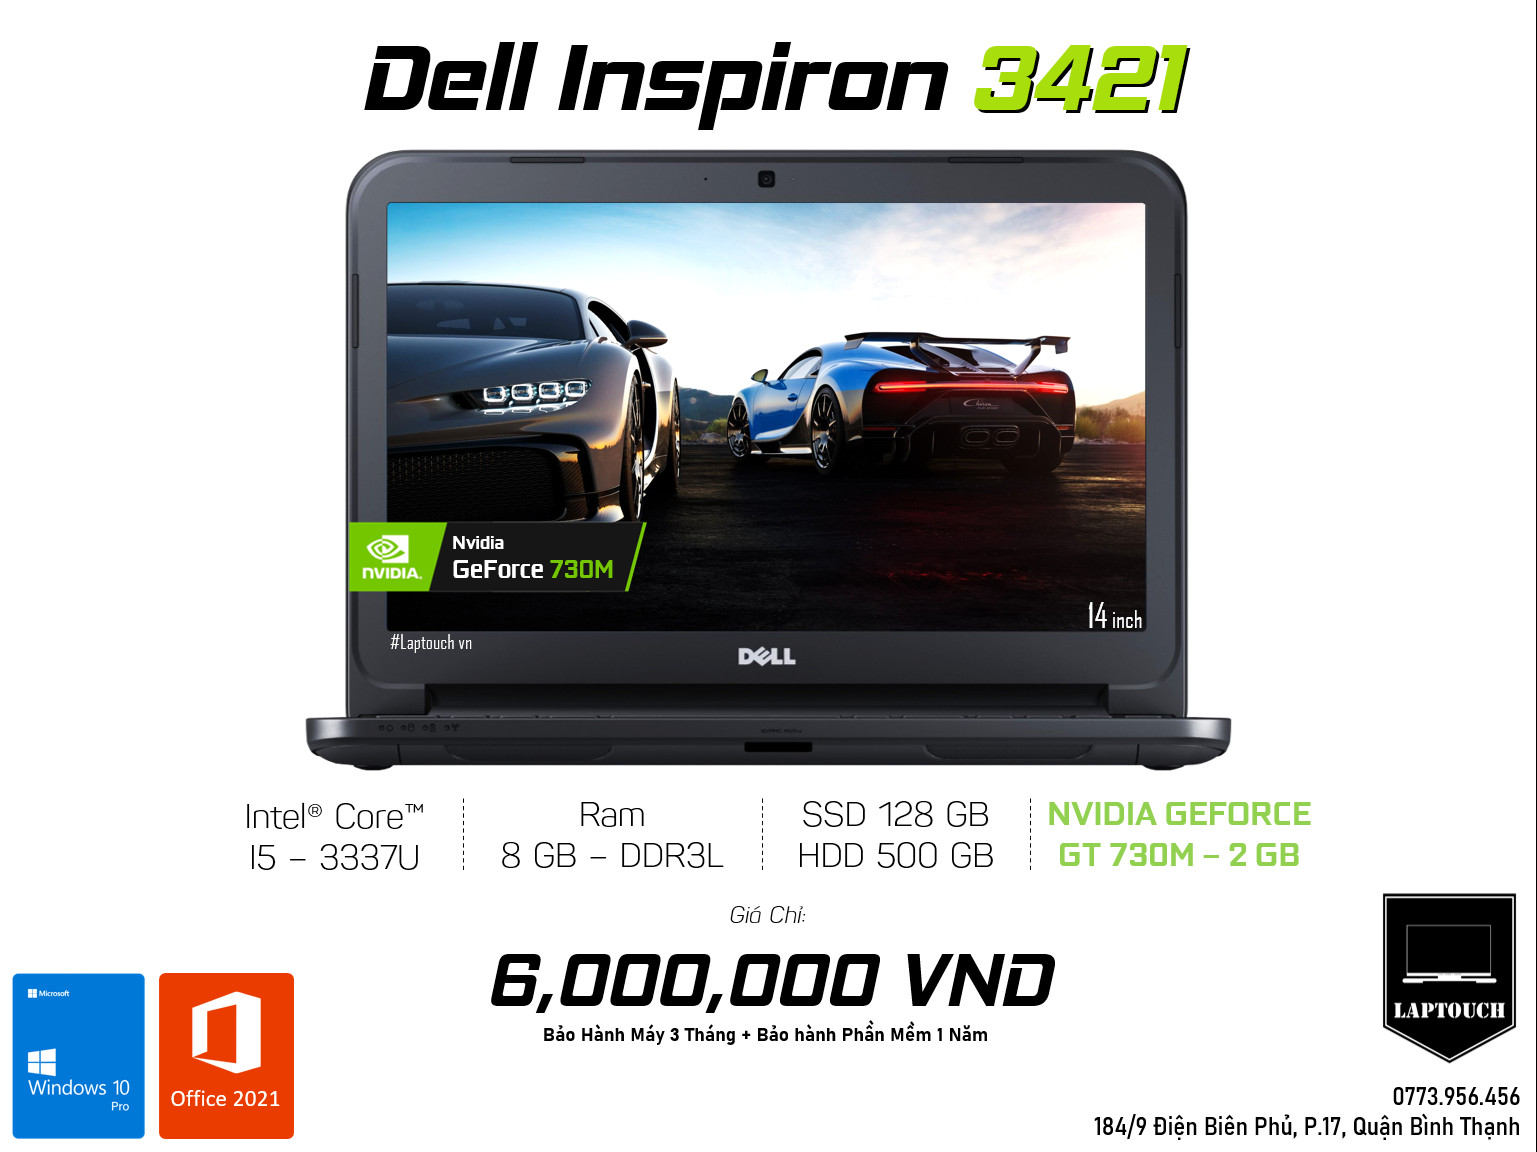 Dell Inspiron 3421